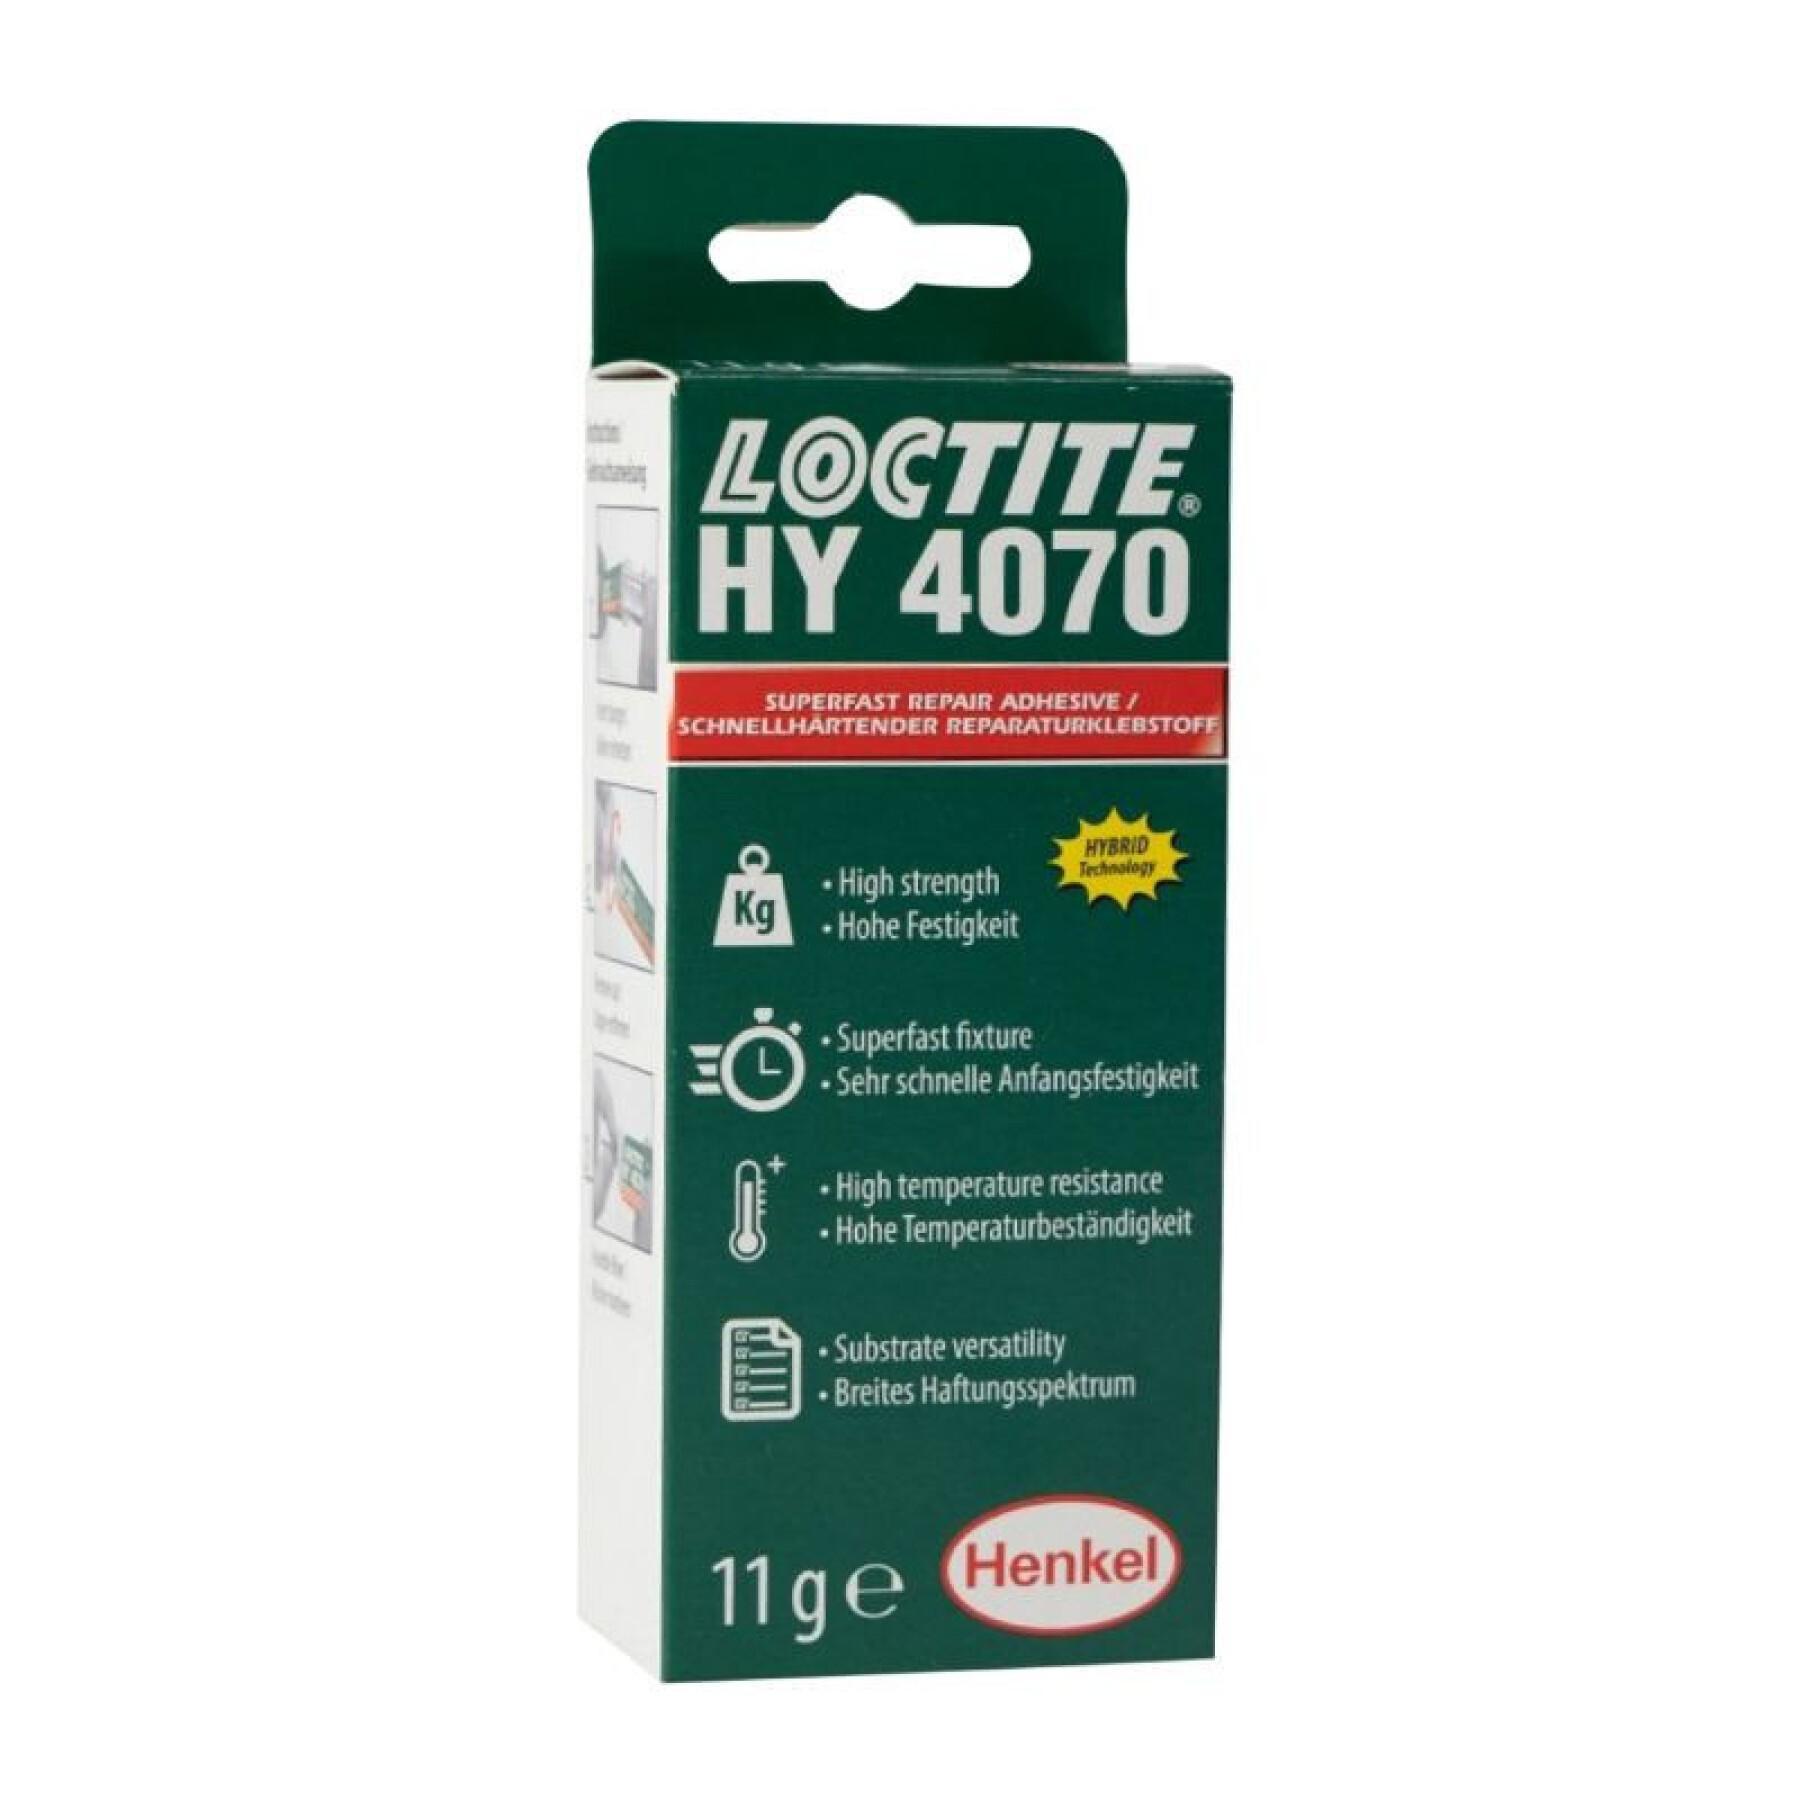 Multifunctionele reparatielijm Loctite HY 4070 Prise